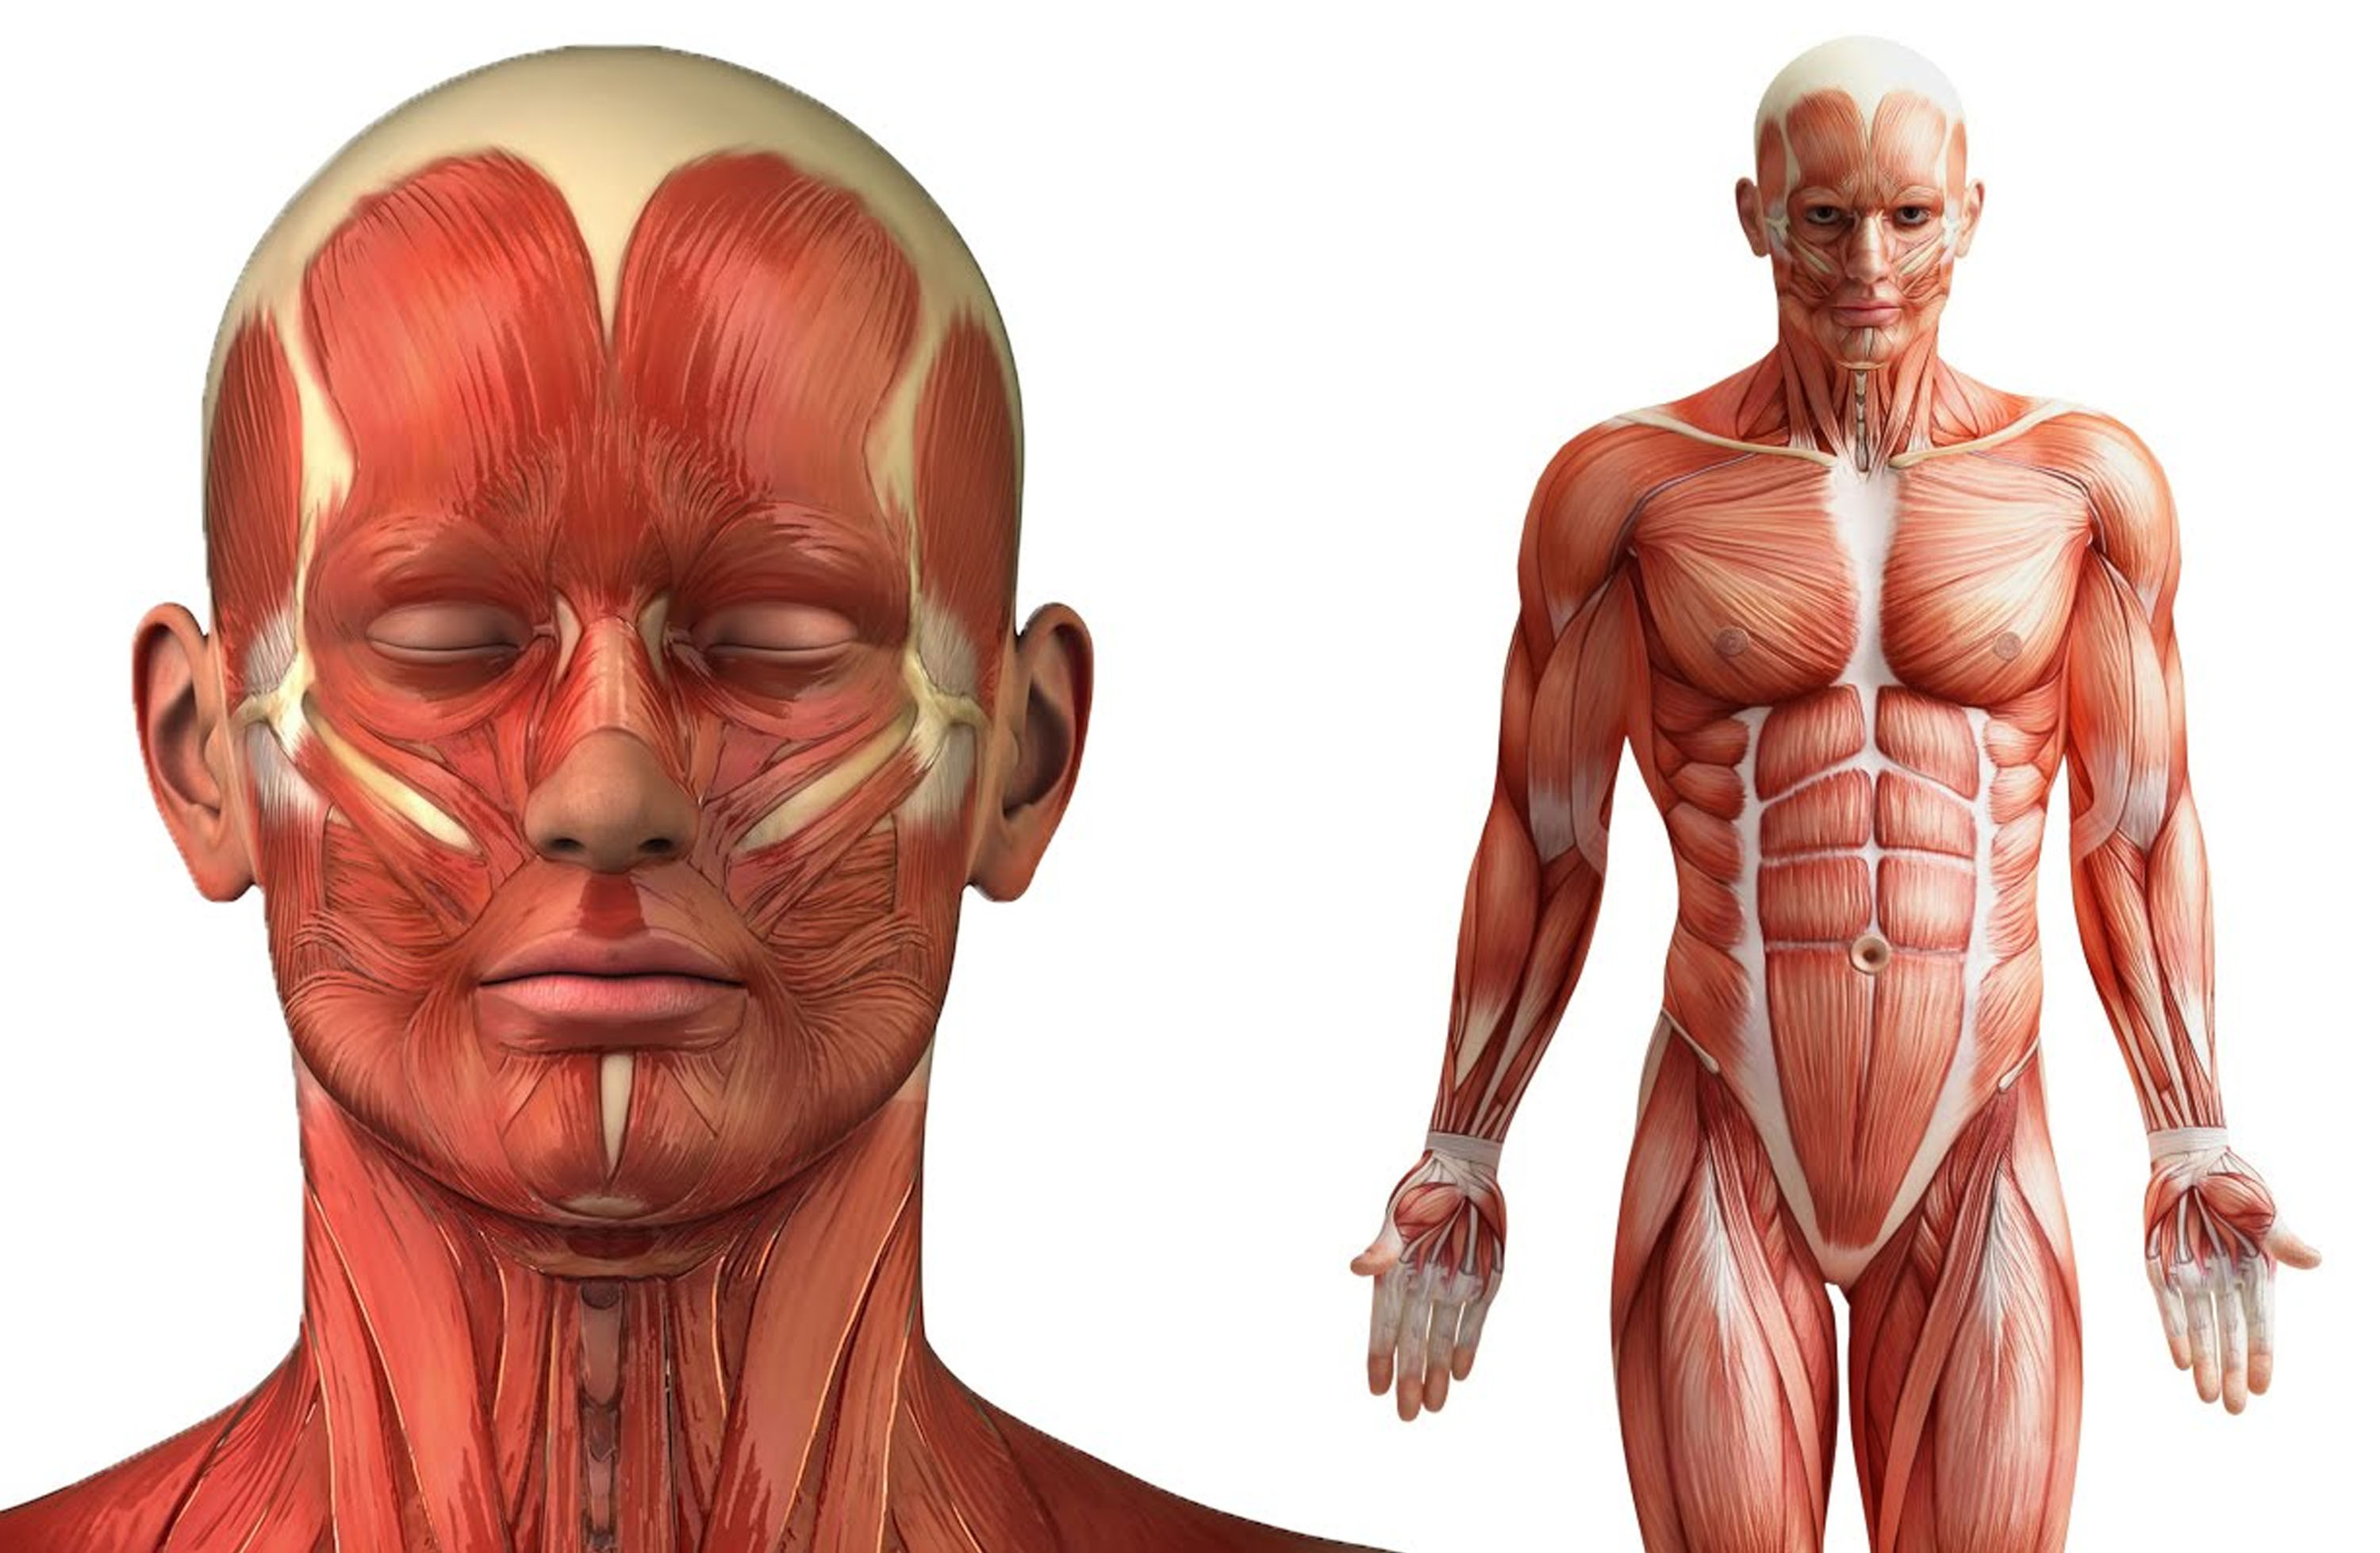 Анатомия человеческого тела